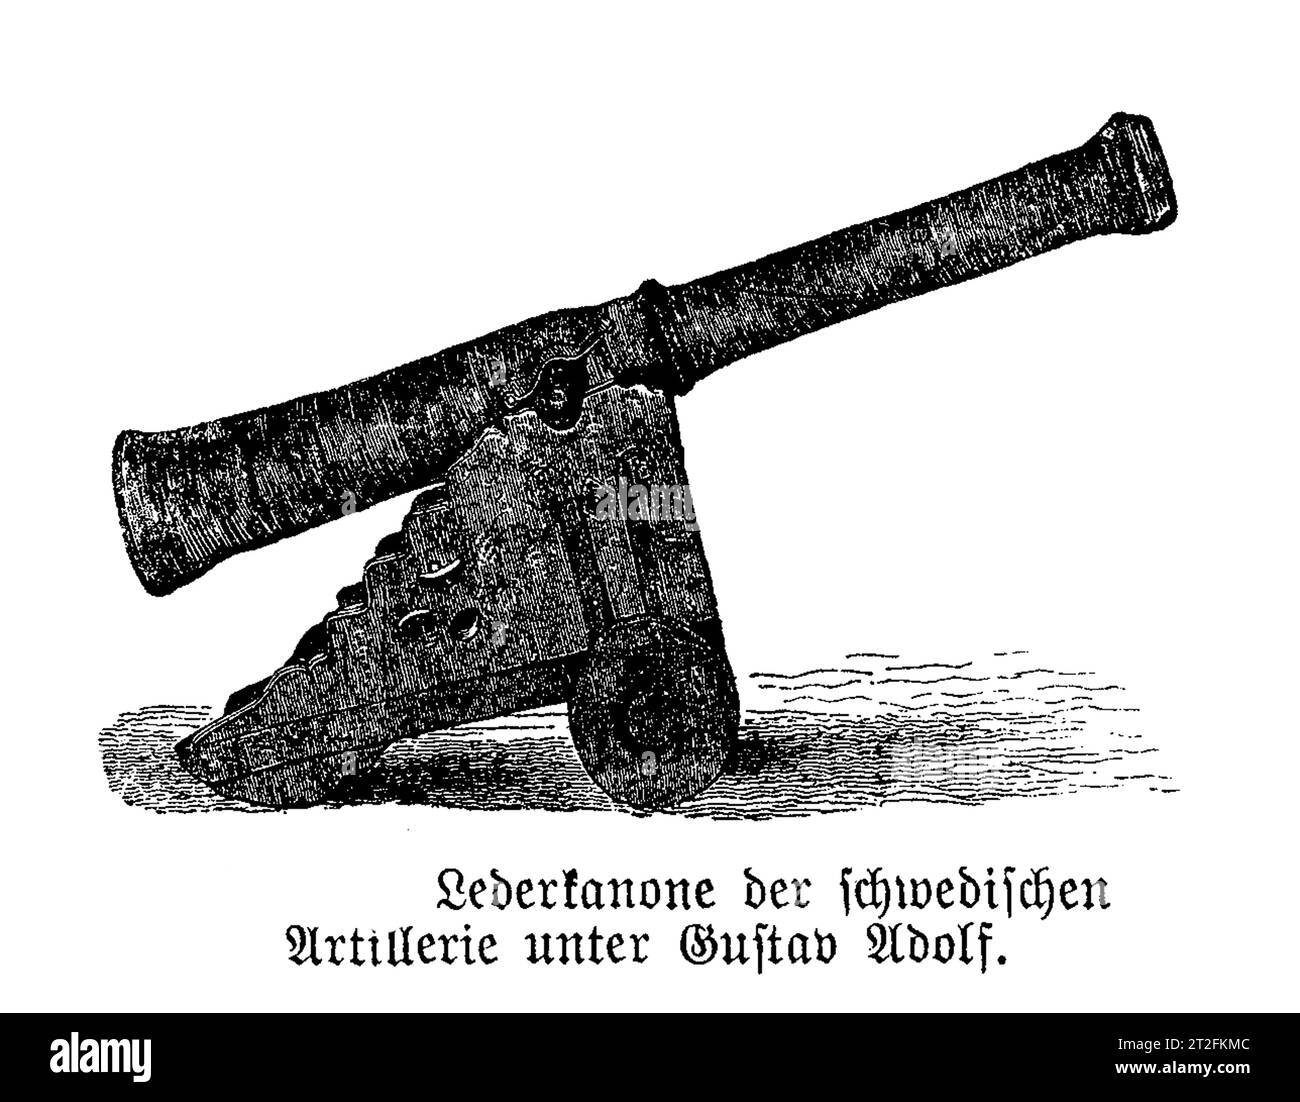 Lederkanone, benannt nach der Schutzlackoberfläche, eine neue leichte und billige Kanone, die von der schwedischen Armee von Gustav II. Adolph, König von Schweden im 17. Jahrhundert verwendet wurde, mit unzuverlässigen Ergebnissen. Stockfoto